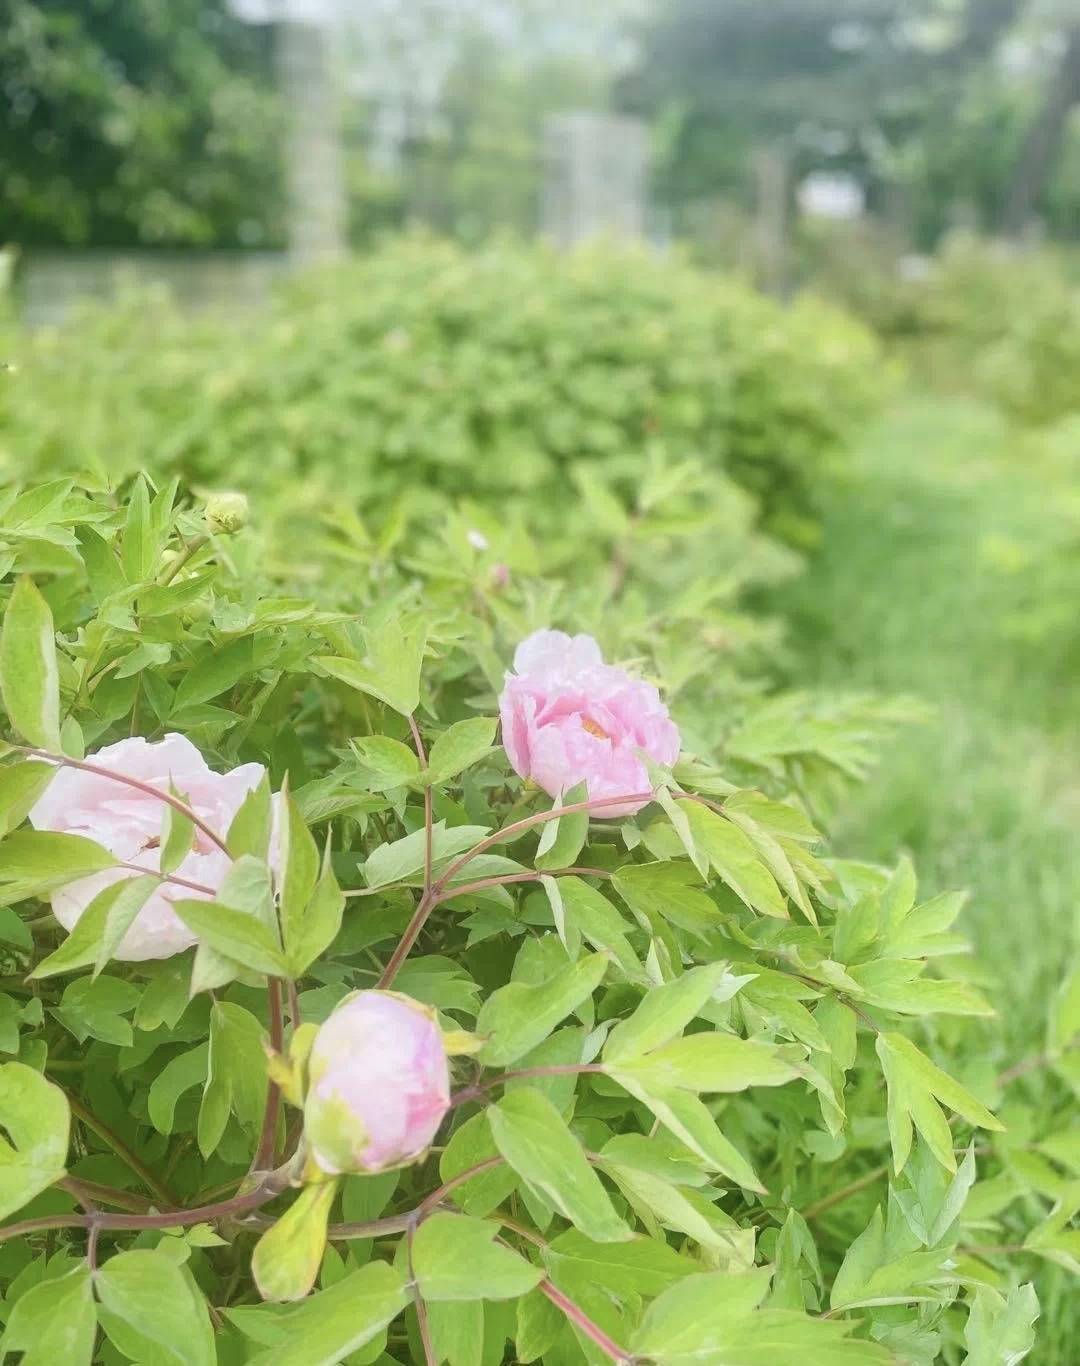 长春市牡丹园第一朵牡丹花绽放 品种